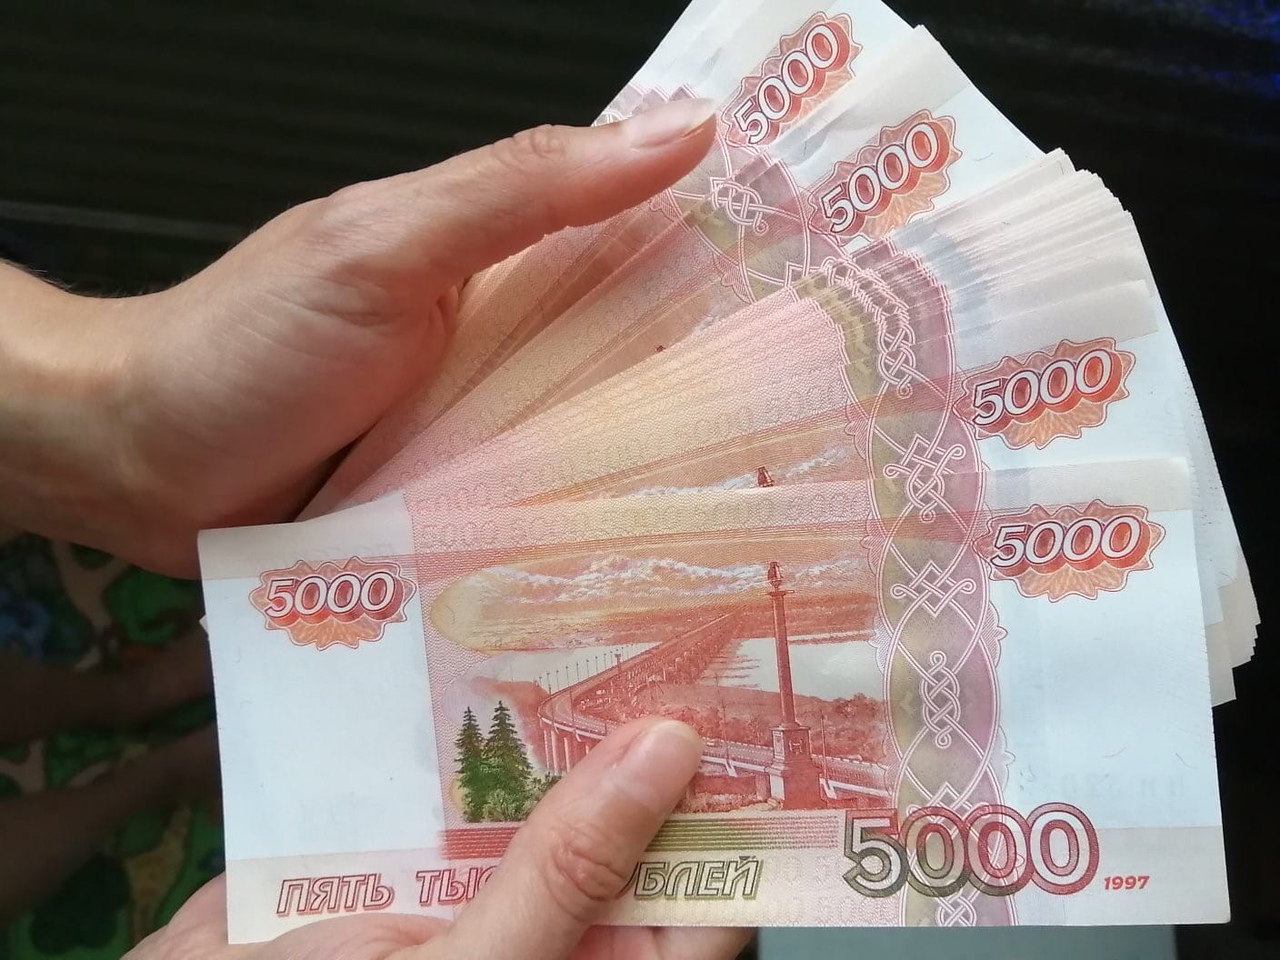  Больше не платите банкнотами 1000 и 5000 рублей: с 1 августа они окажутся бестолковыми бумажками 